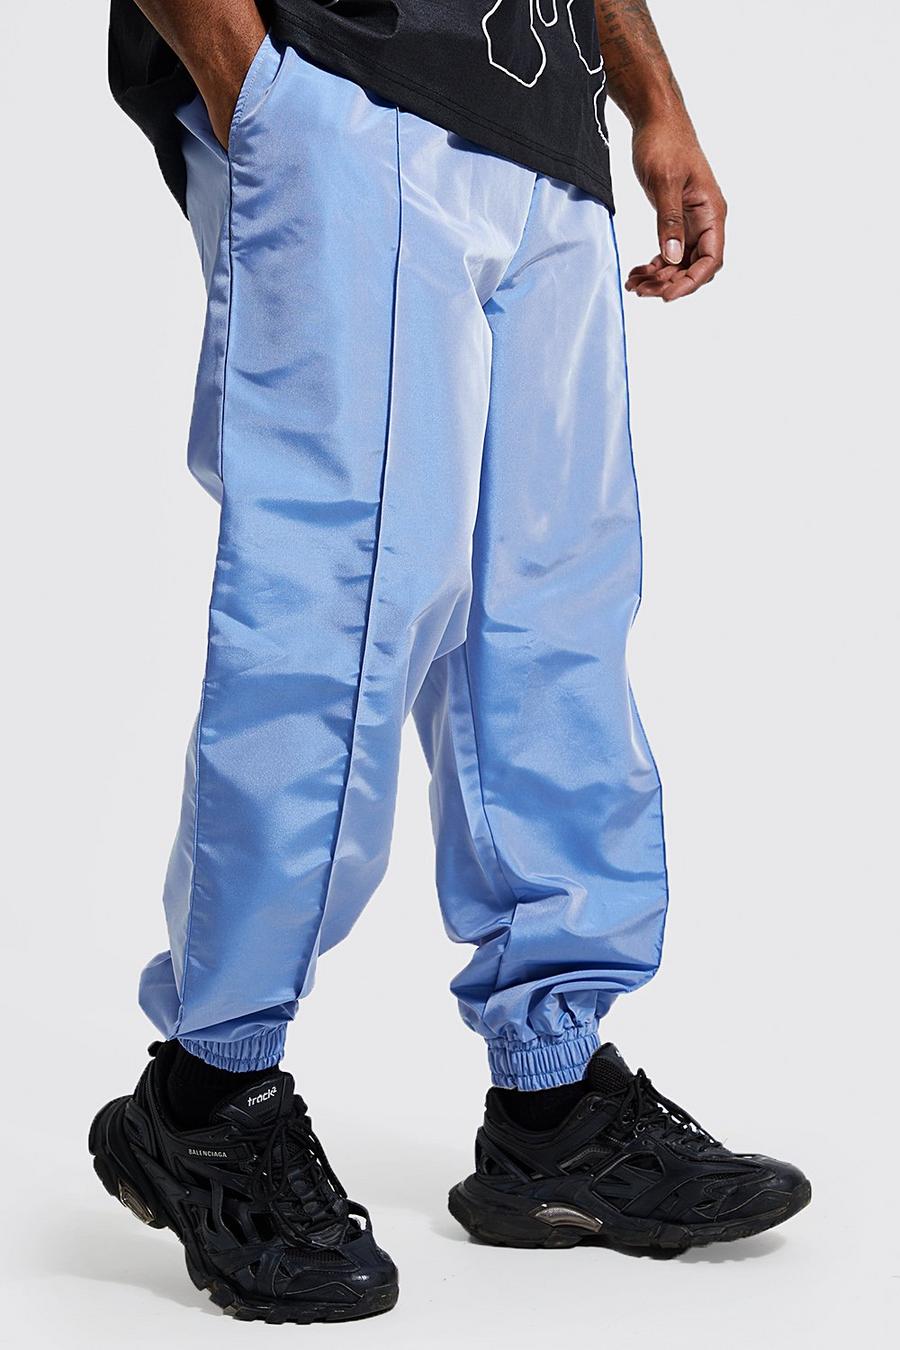 כחול azzurro מכנסי דגמ'ח מחליפי צבעים בגזרה רגילה למידות גדולות